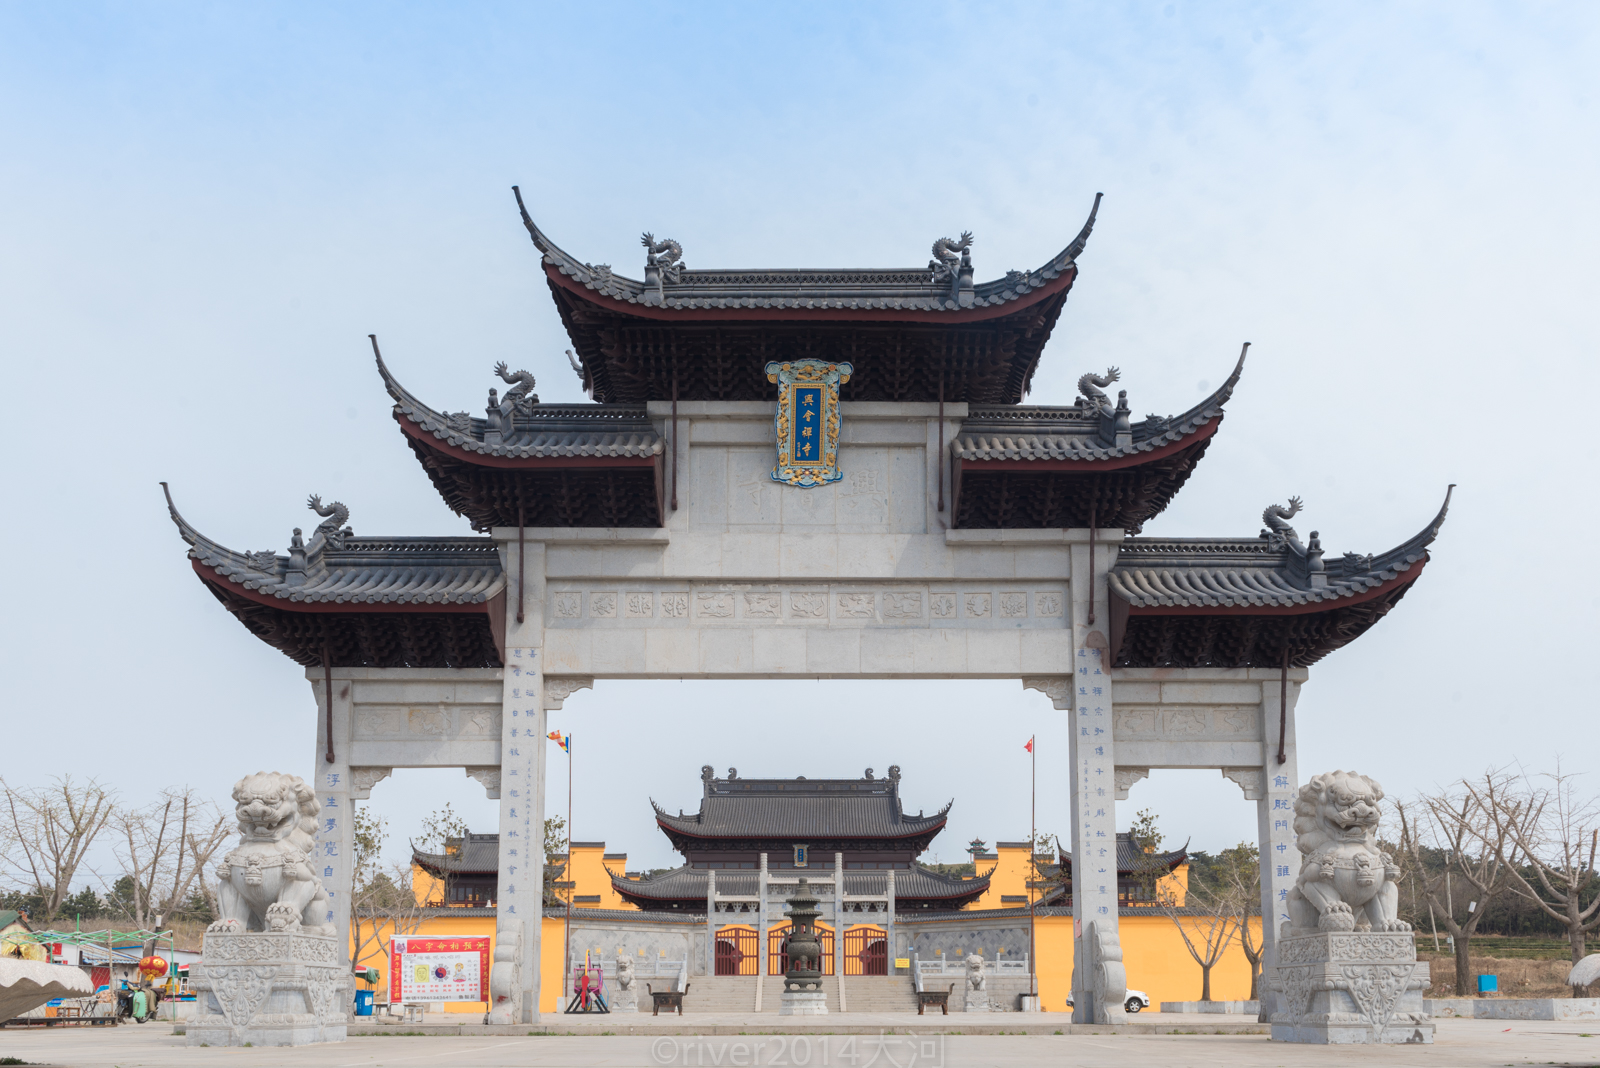 在江苏连云港赣榆有一个徐福村,传说这里是徐福故里,当地建起了徐福庙